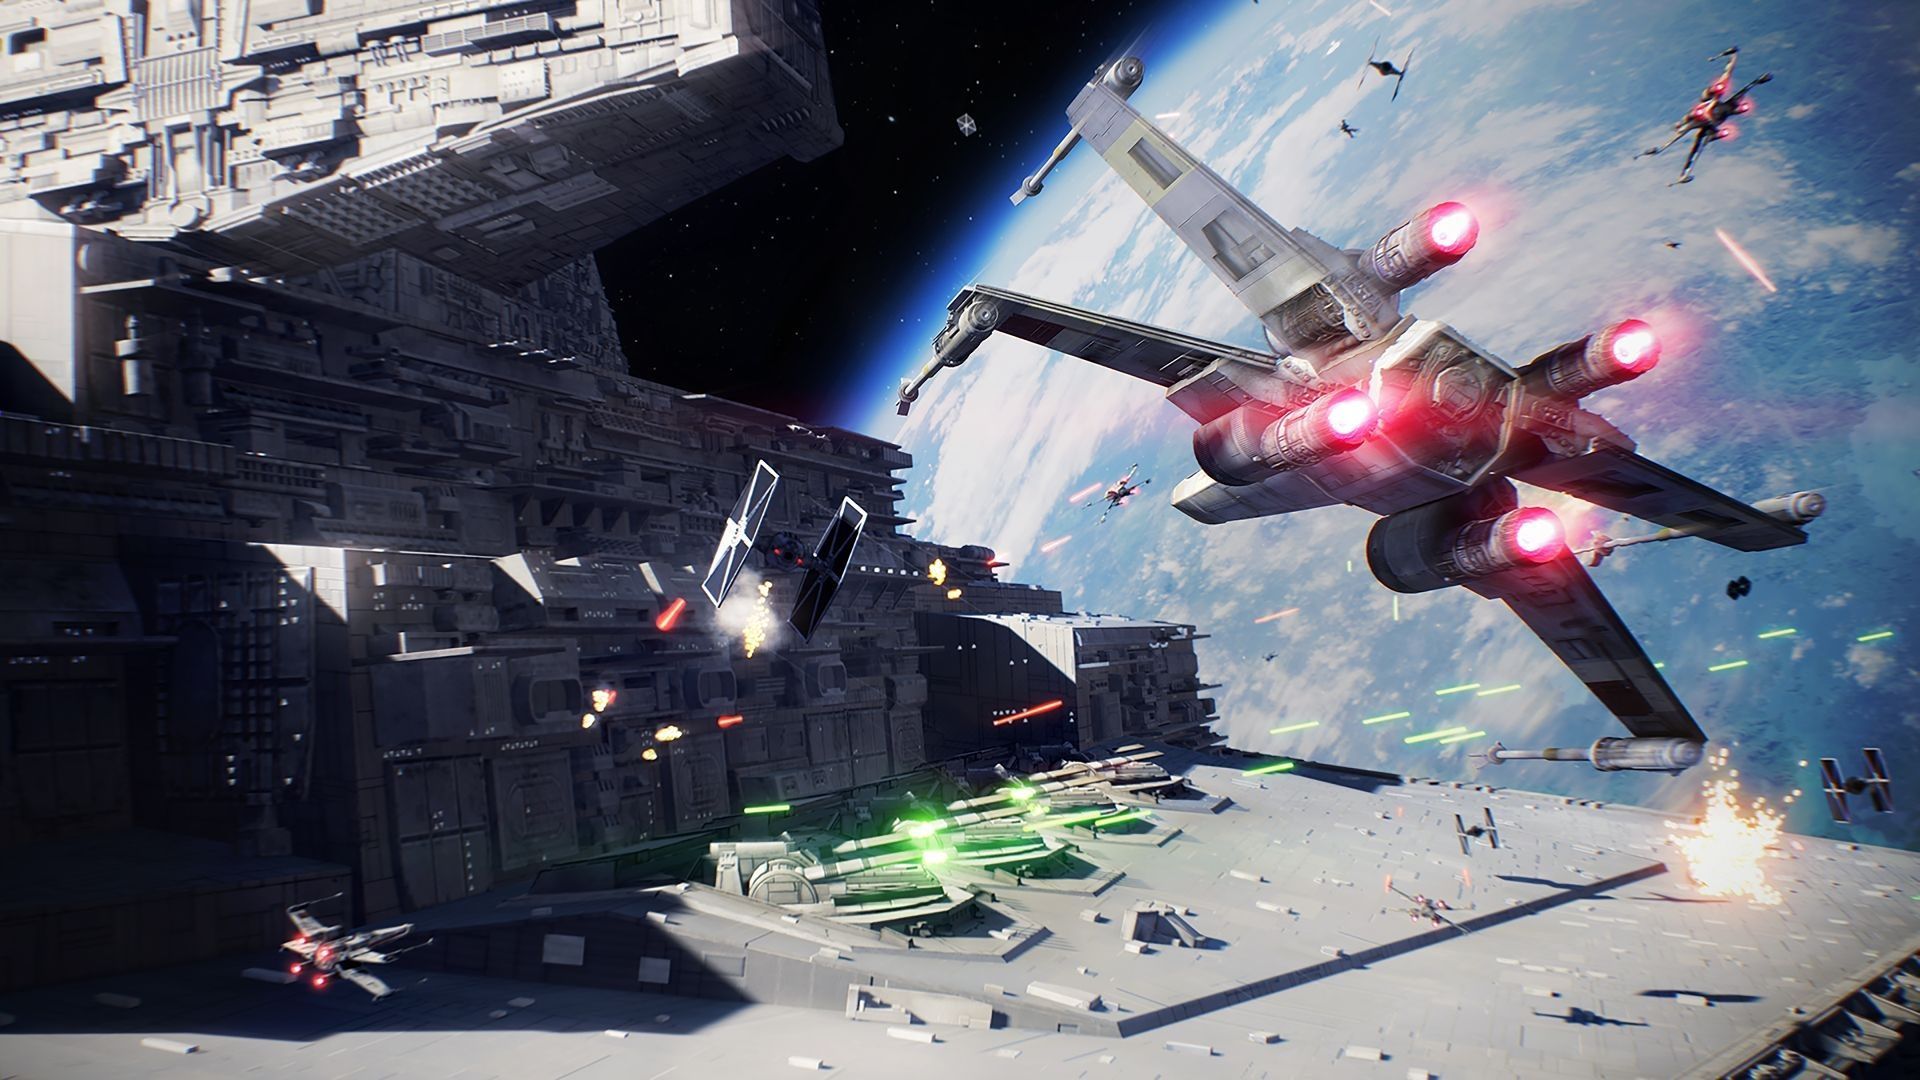 Pole kosmicznej bitwy w Star Wars Battlefront II z X-wingiem nacierającym na Tie Fightera